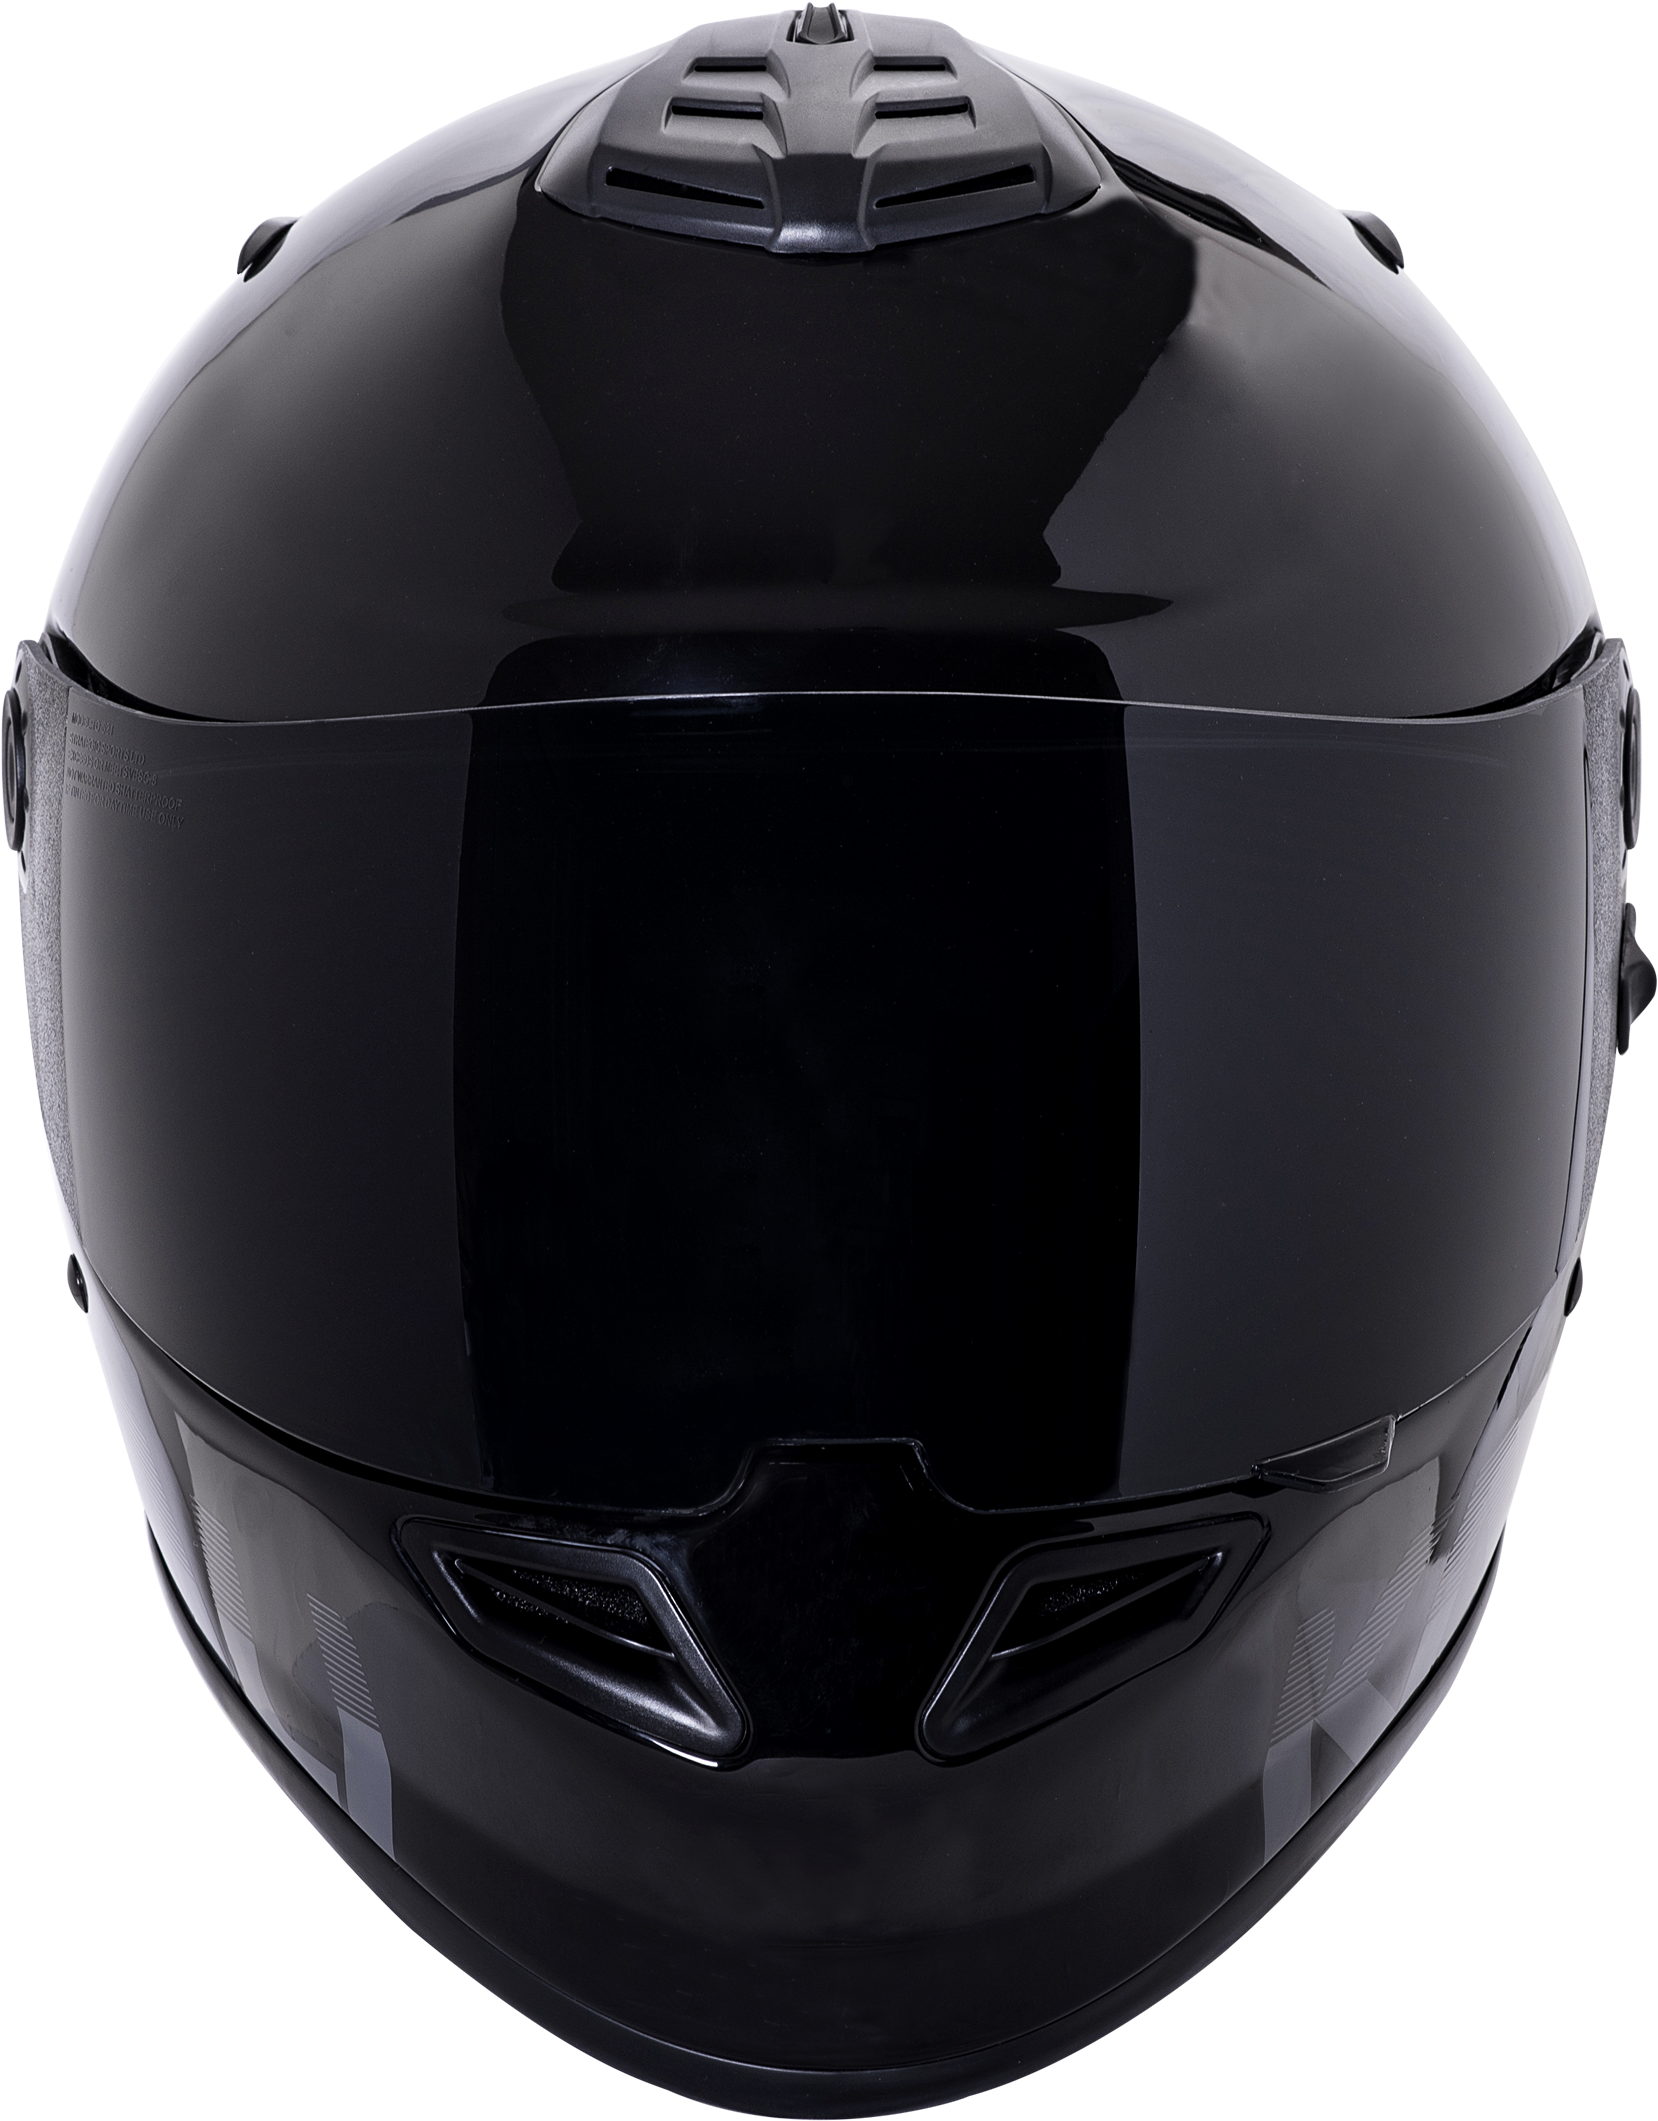 A Black Motorcycle Helmet With Visor